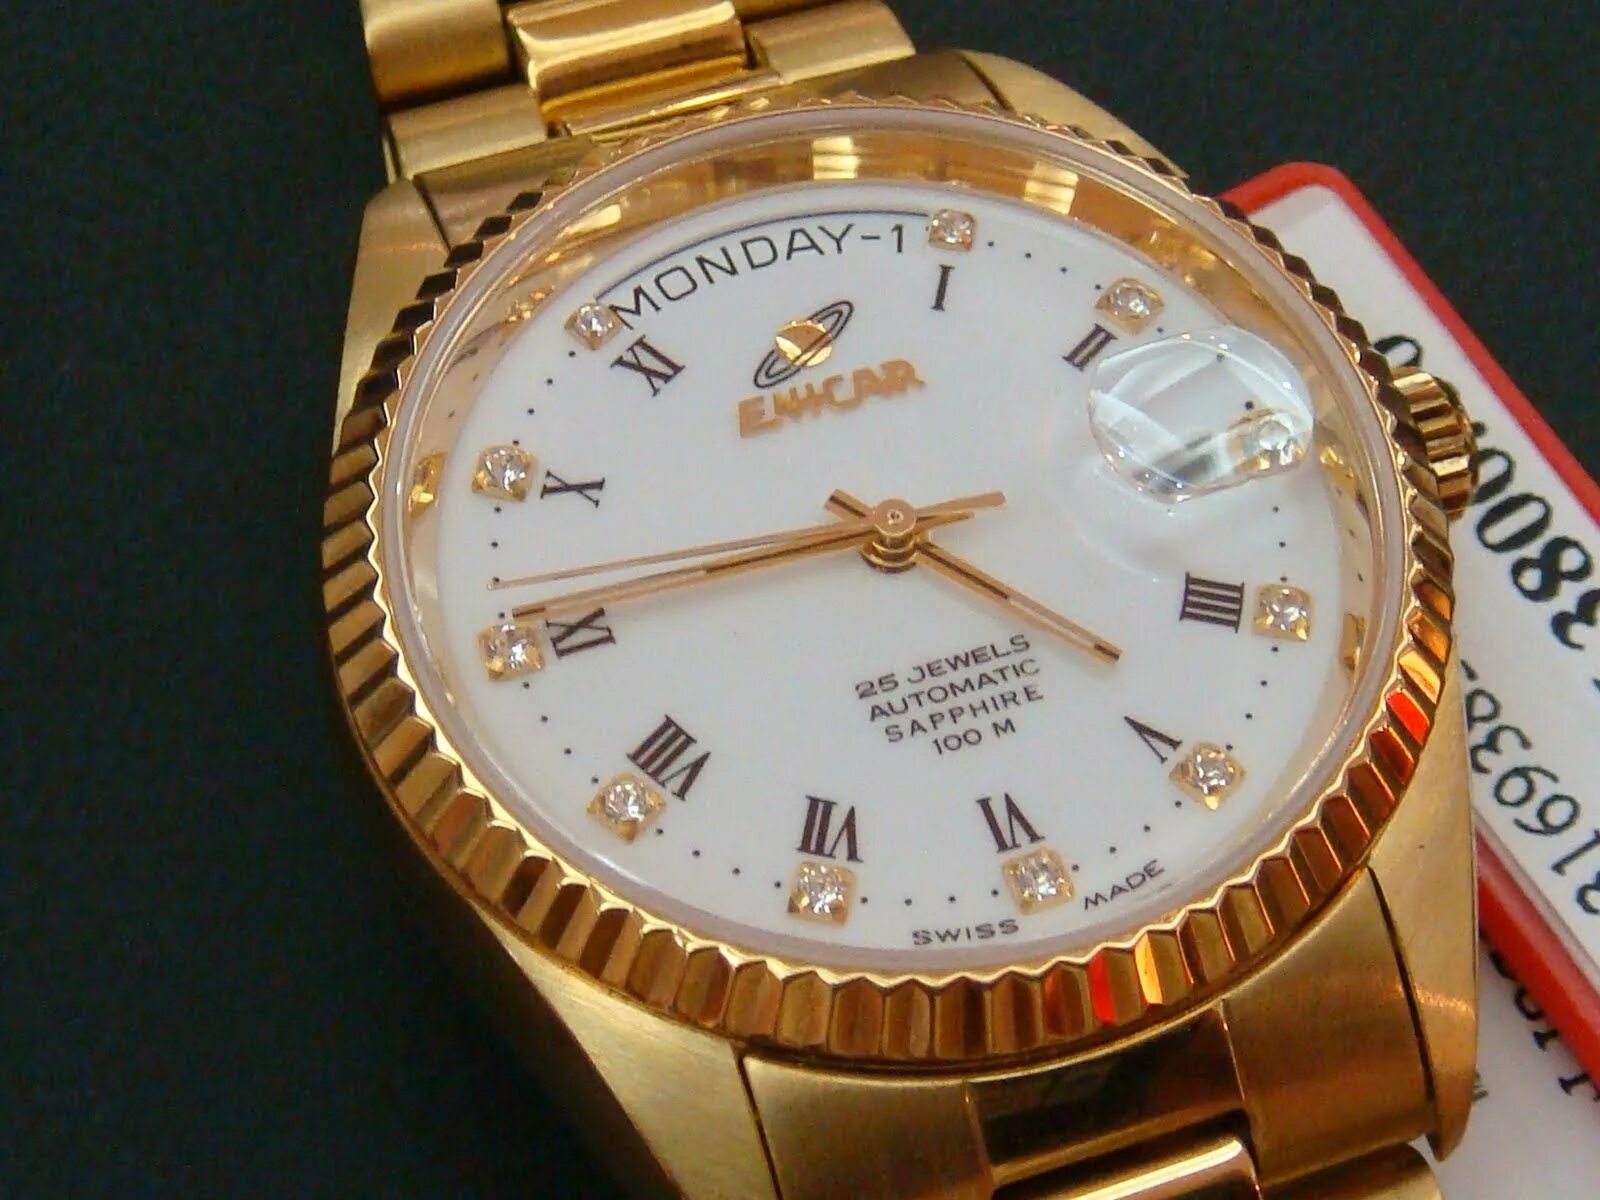 Сайты производителя часов. Часы Enicar. Часы Омега 25 Jewels Swiss. Часы Enicar Automatic. Rolex 25 Jewels Swiss made.